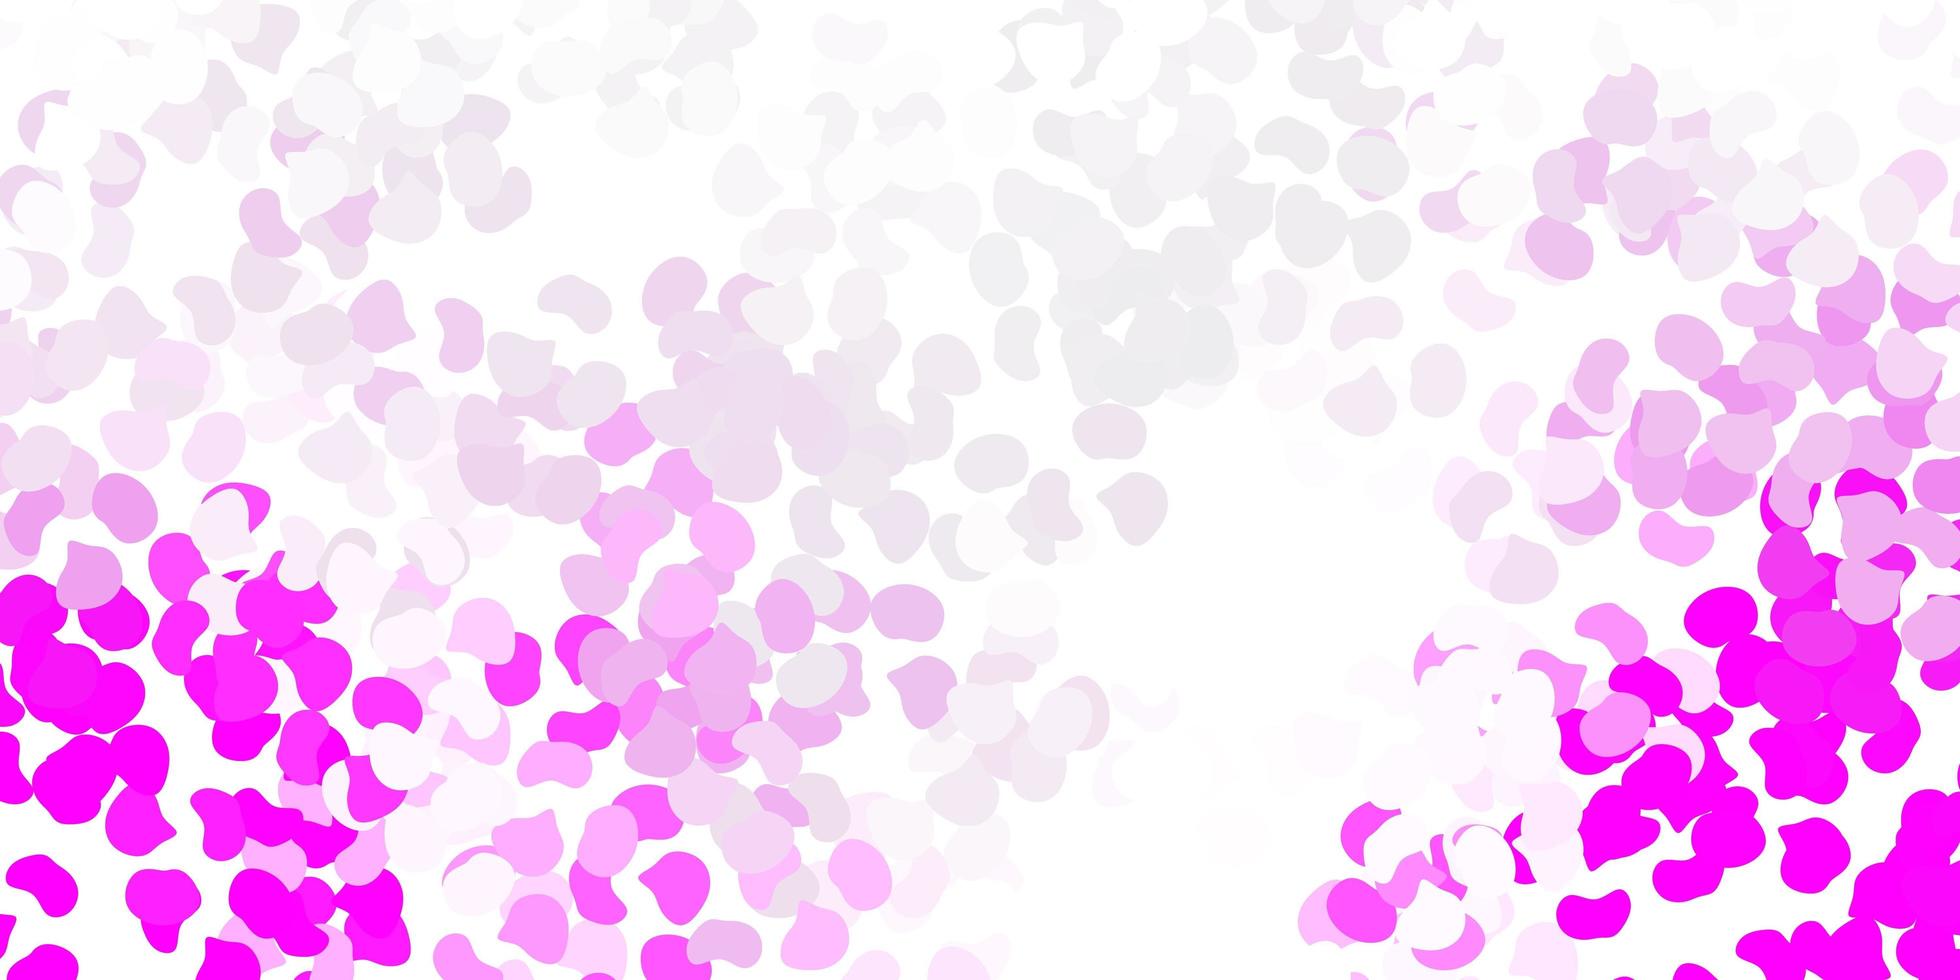 sfondo vettoriale rosa chiaro con forme caotiche.